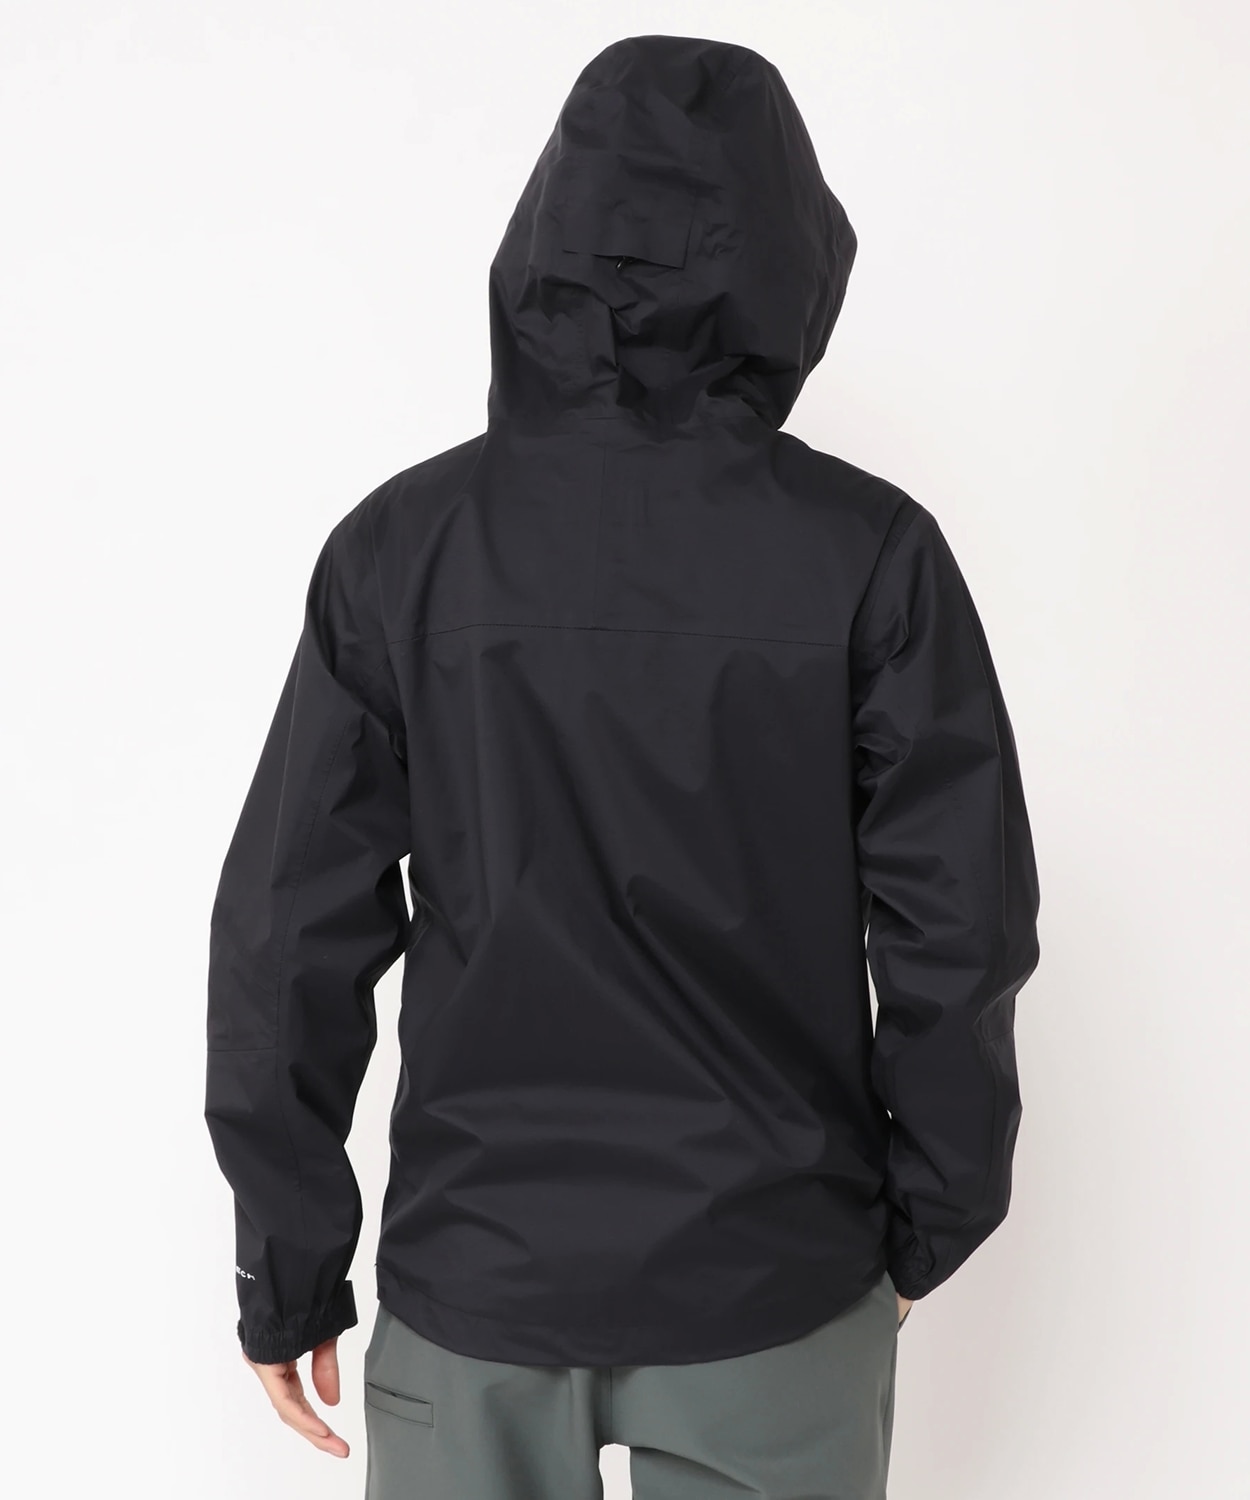 マウンテンズアーコーリング2ジャケット(S Black): アウトレット商品以外用│コロンビア(Columbia)公式通販サイト